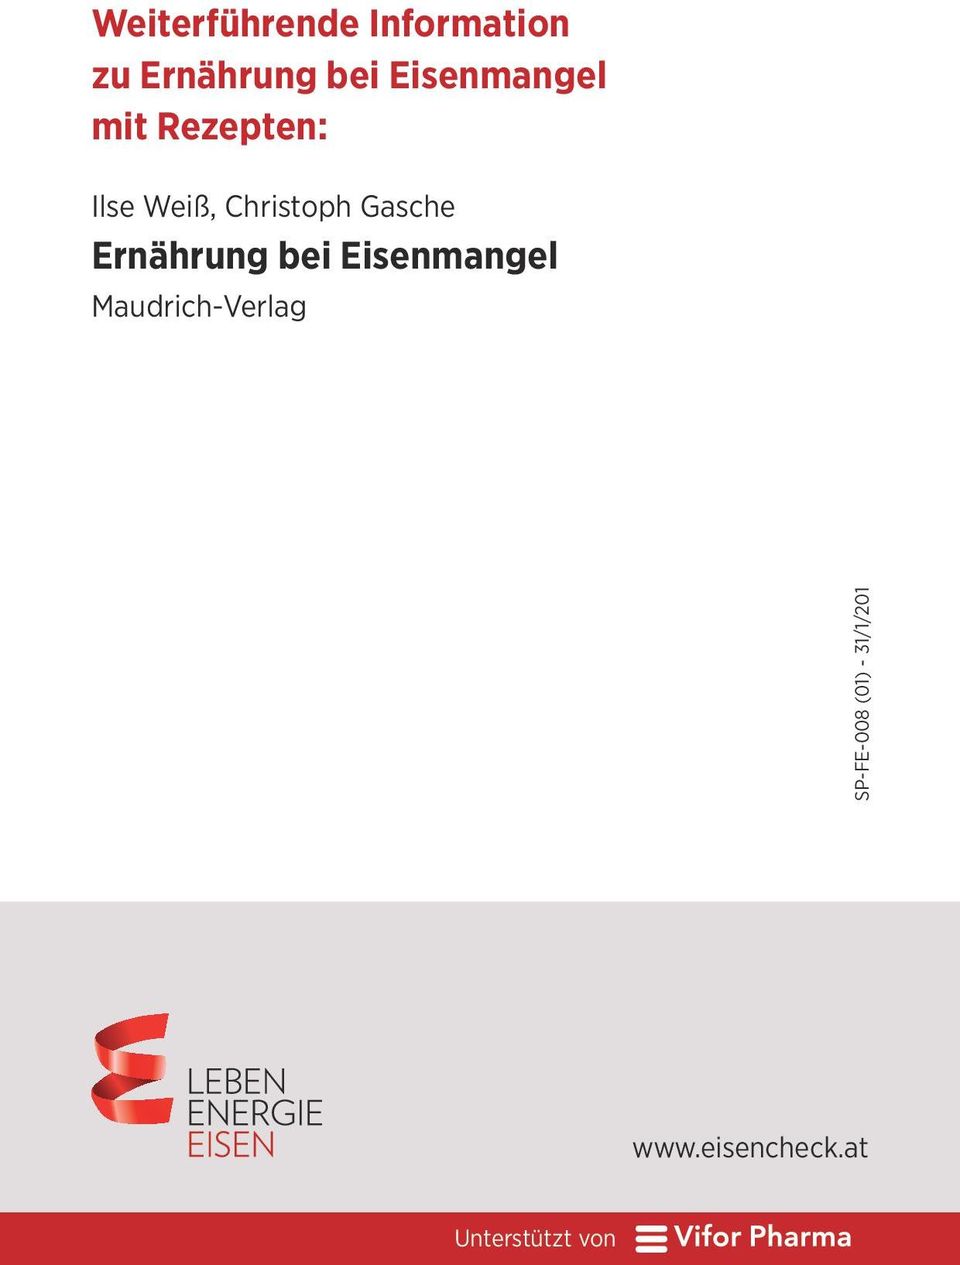 Gasche Ernährung bei Eisenmangel Maudrich-Verlag